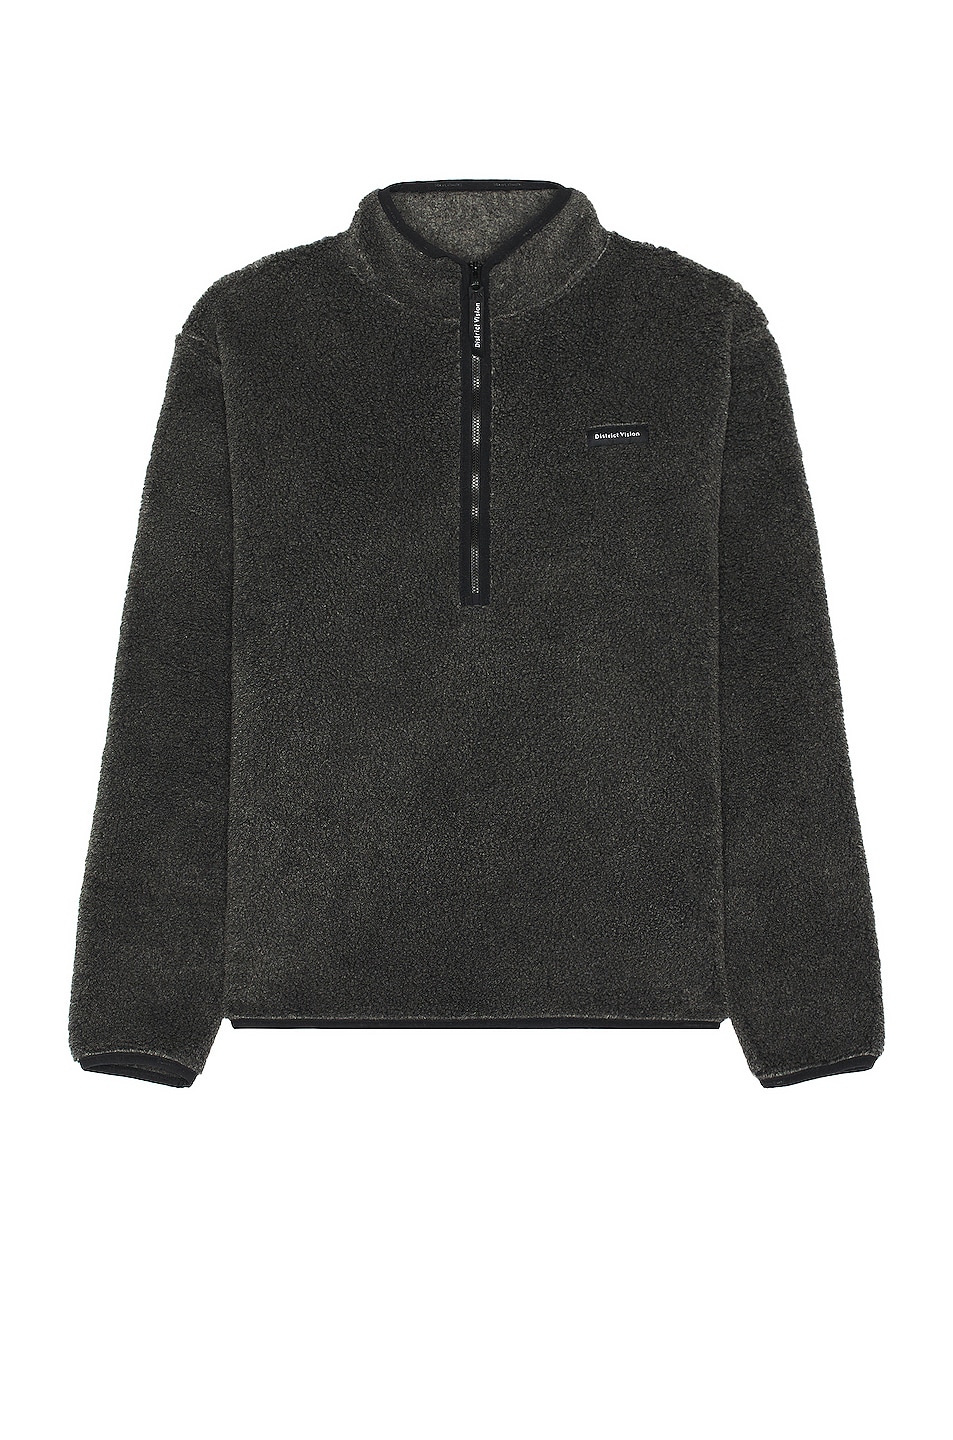 Image 1 of District Vision Doug Half Zip Fleece Sweater in Charcoal